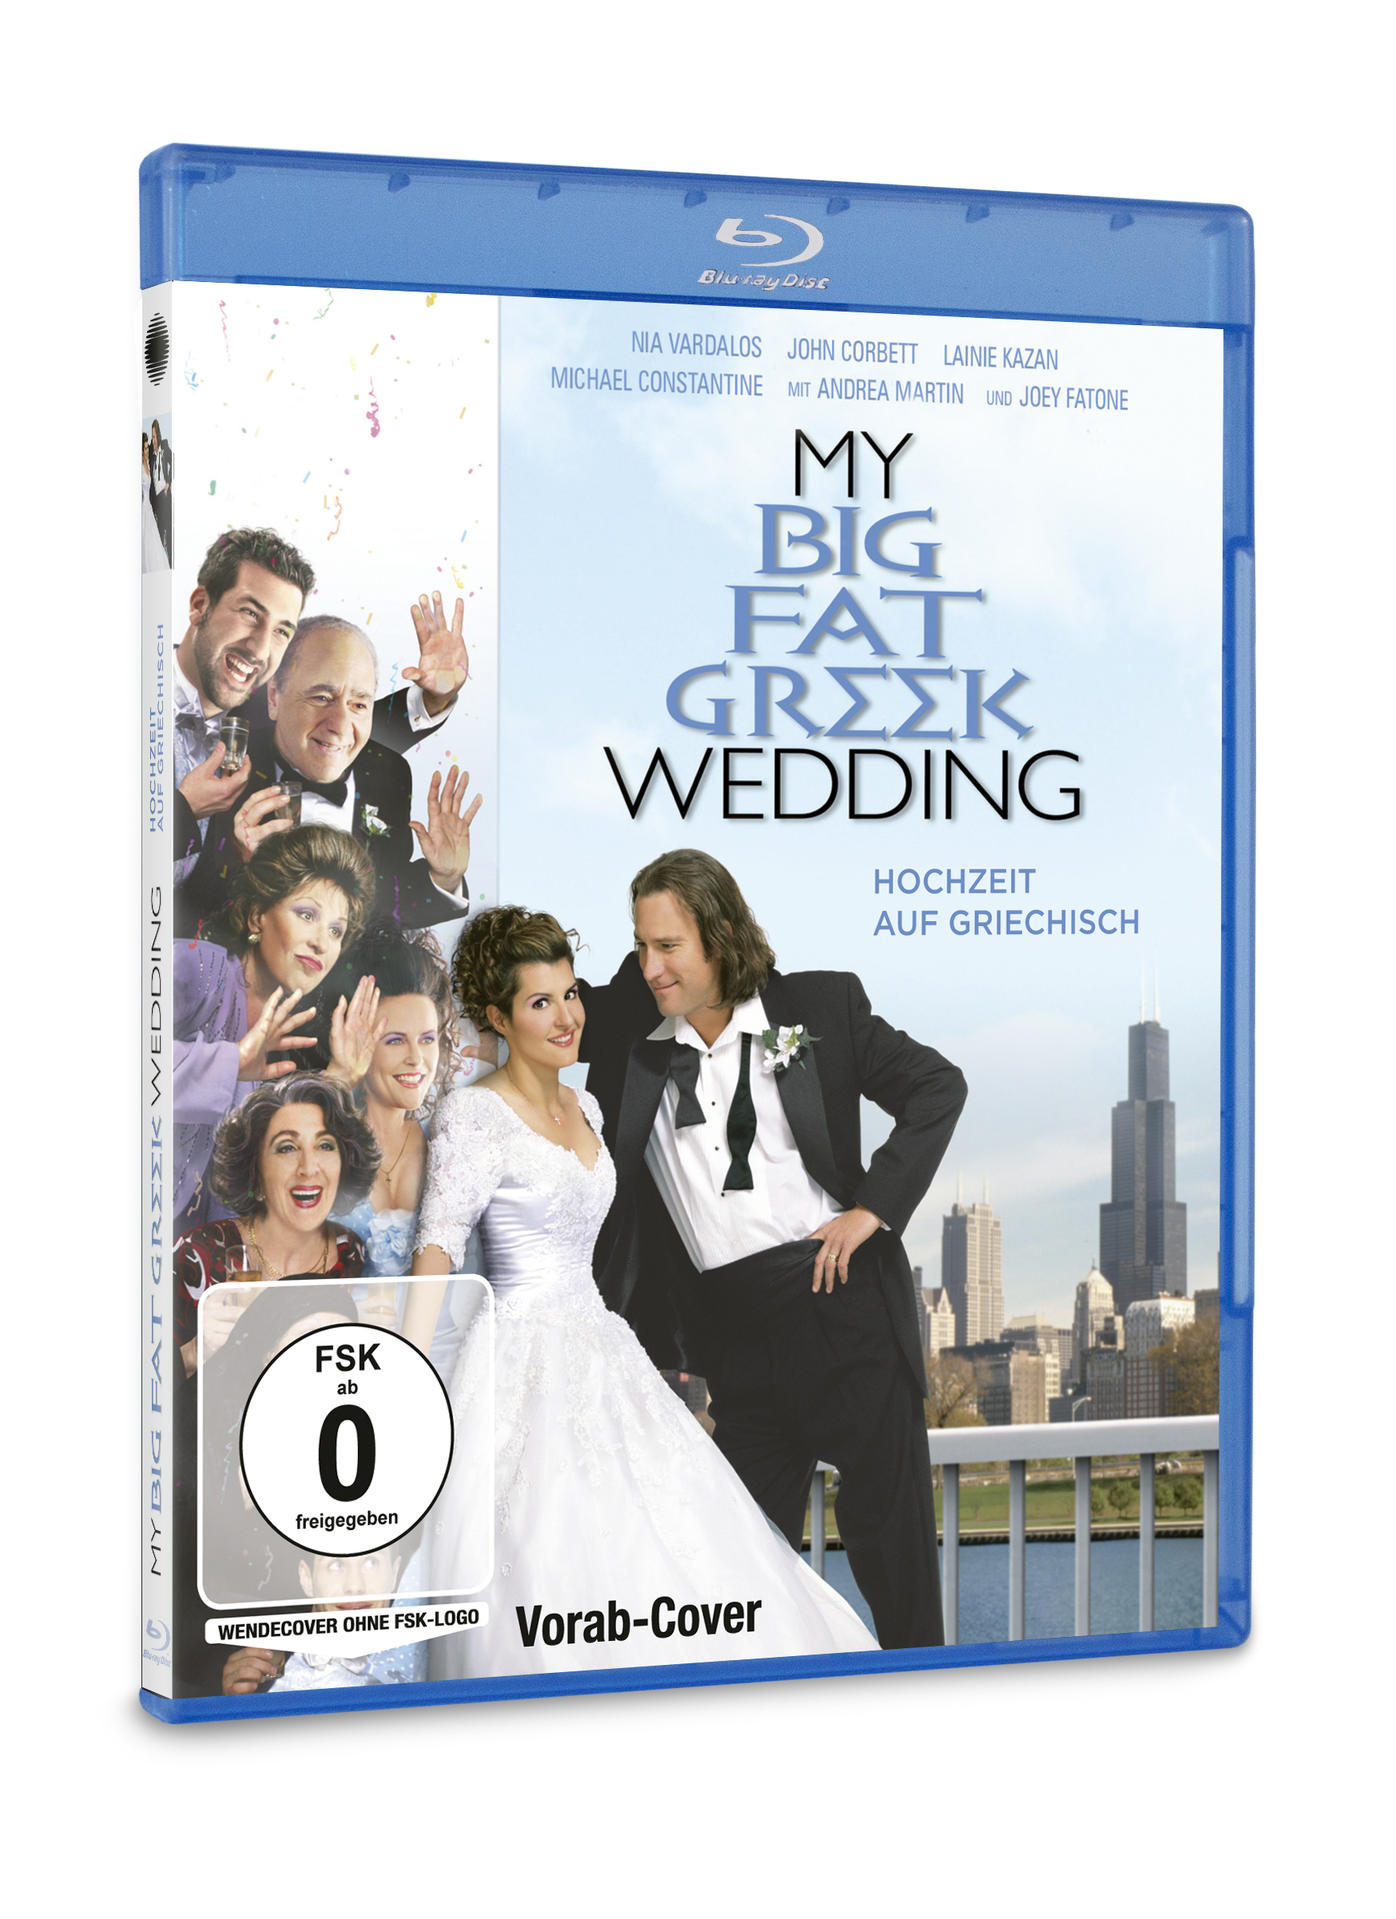 My Hochzeit Blu-ray Wedding Fat - Griechisch auf Big Greek